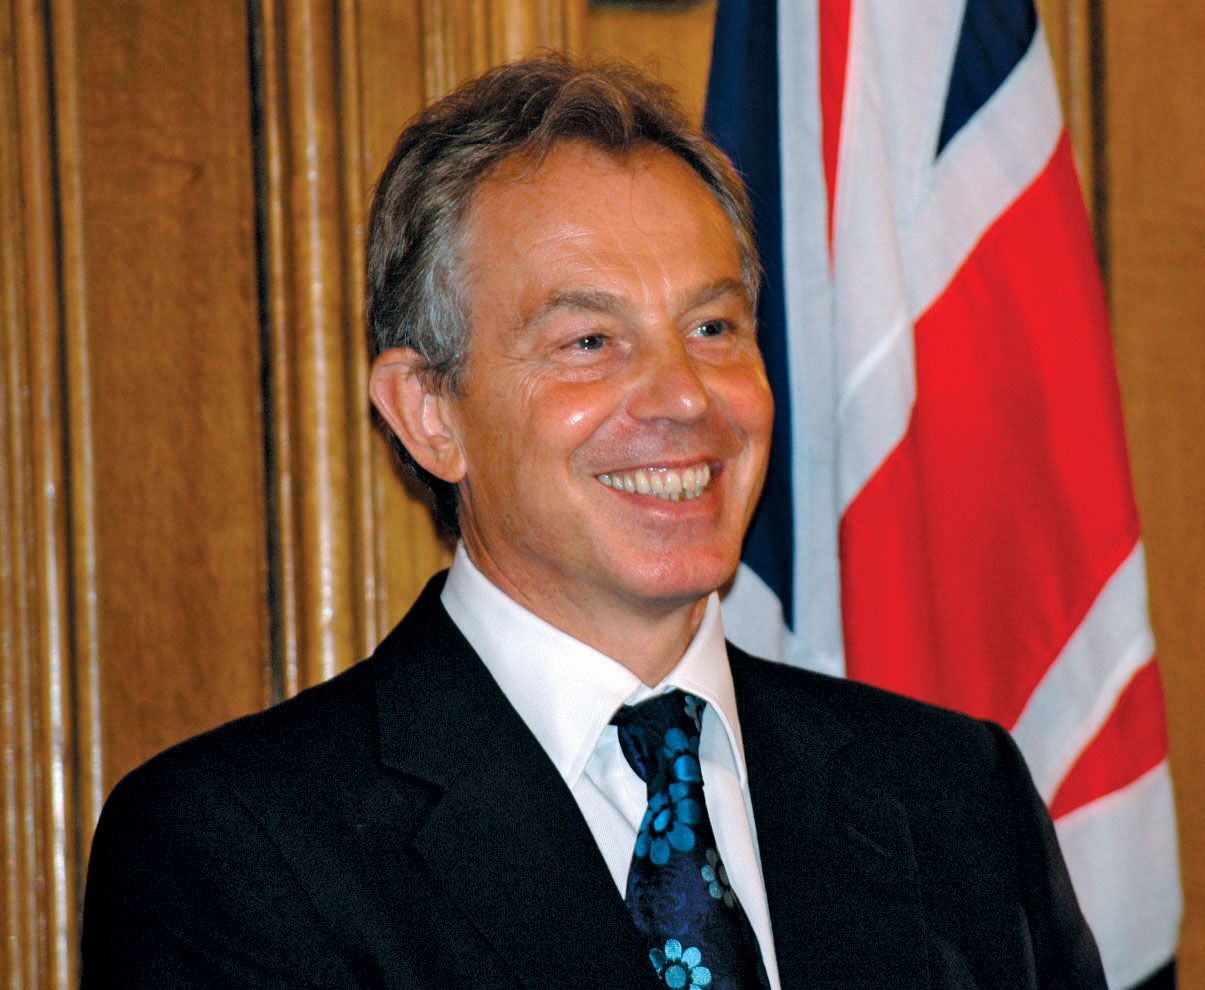 Tony-Blair-2006.jpg